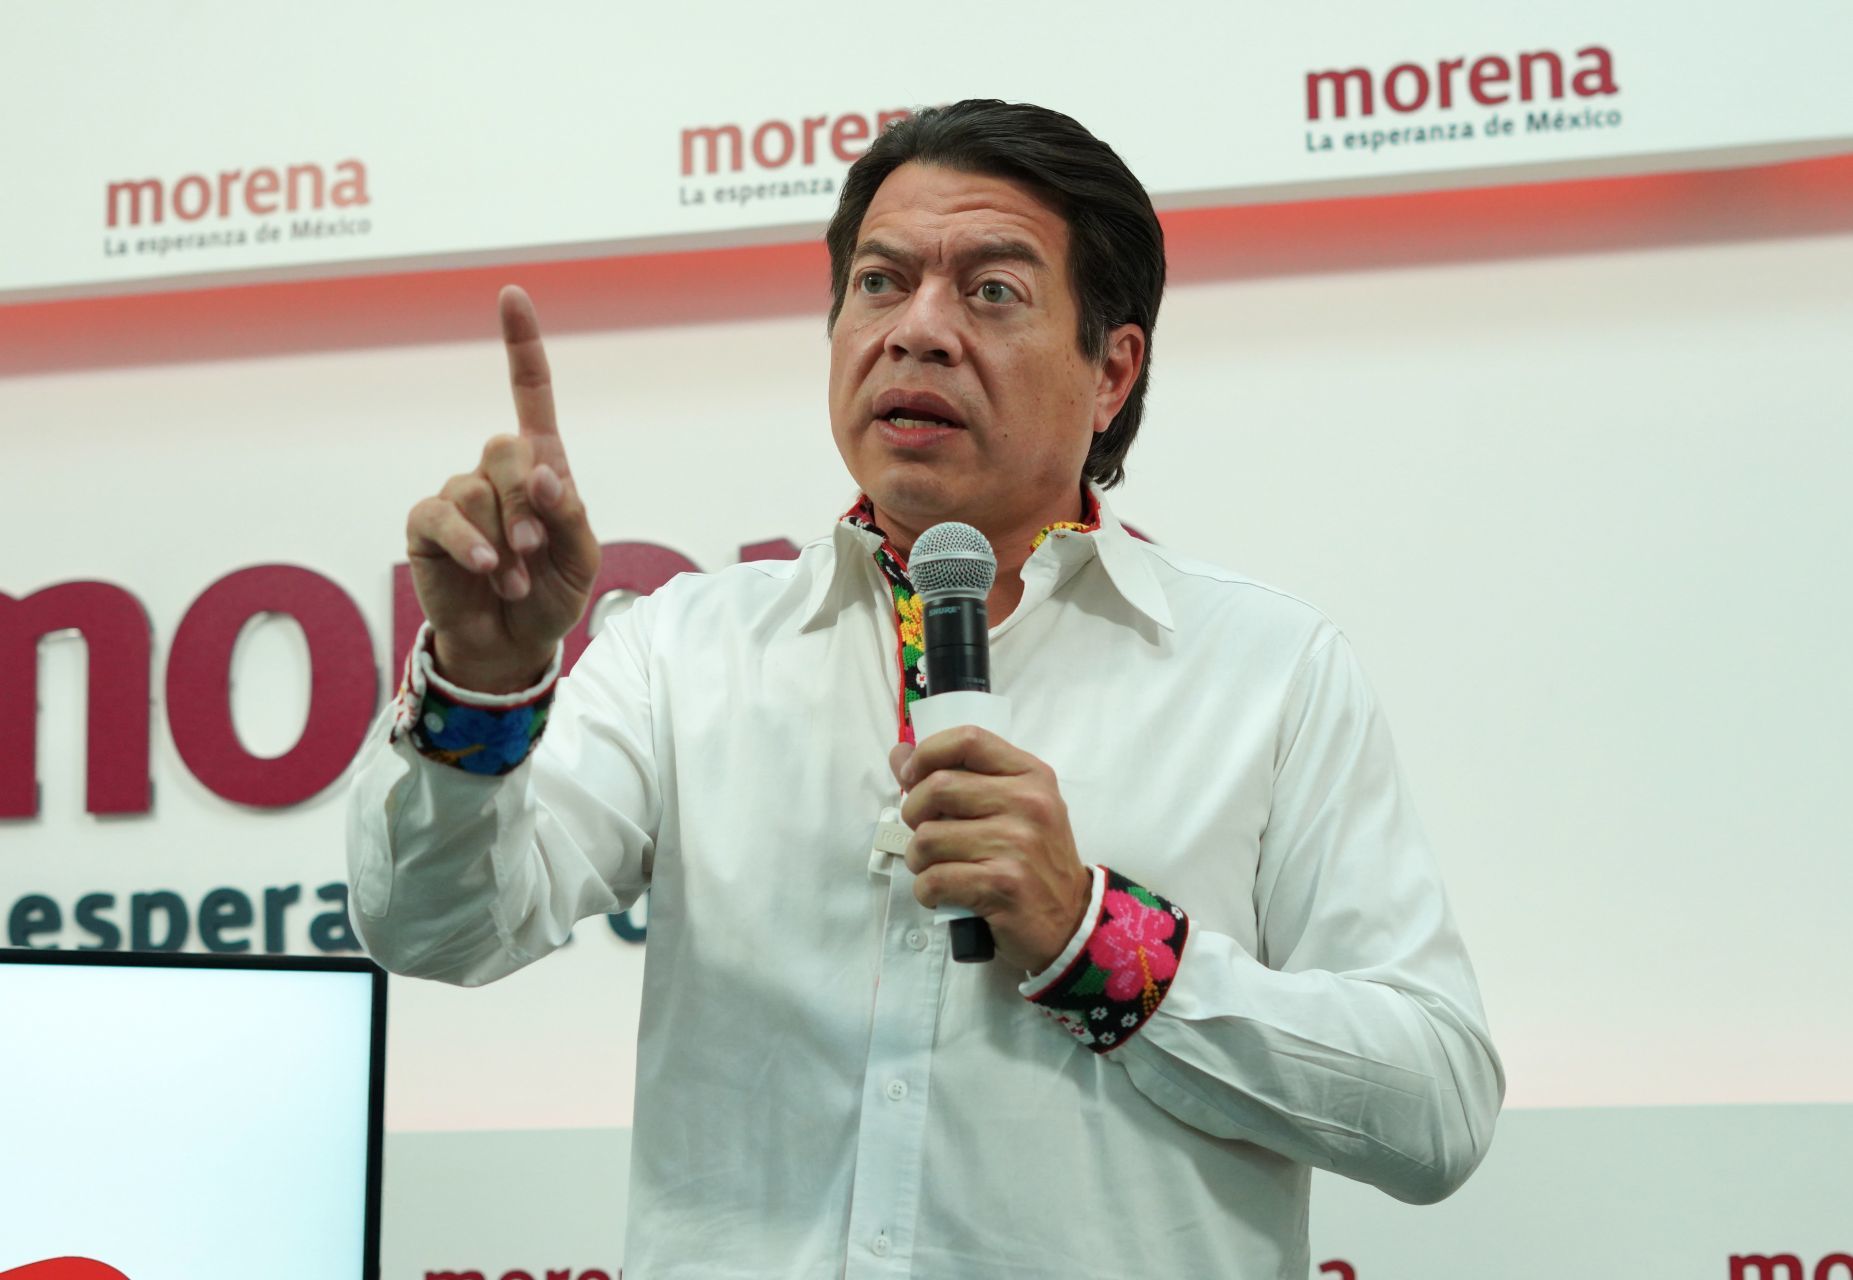 Mario Delgado respondió a exigencias de abandonar Morena: “Ustedes renuncien a la dictadura del ego”